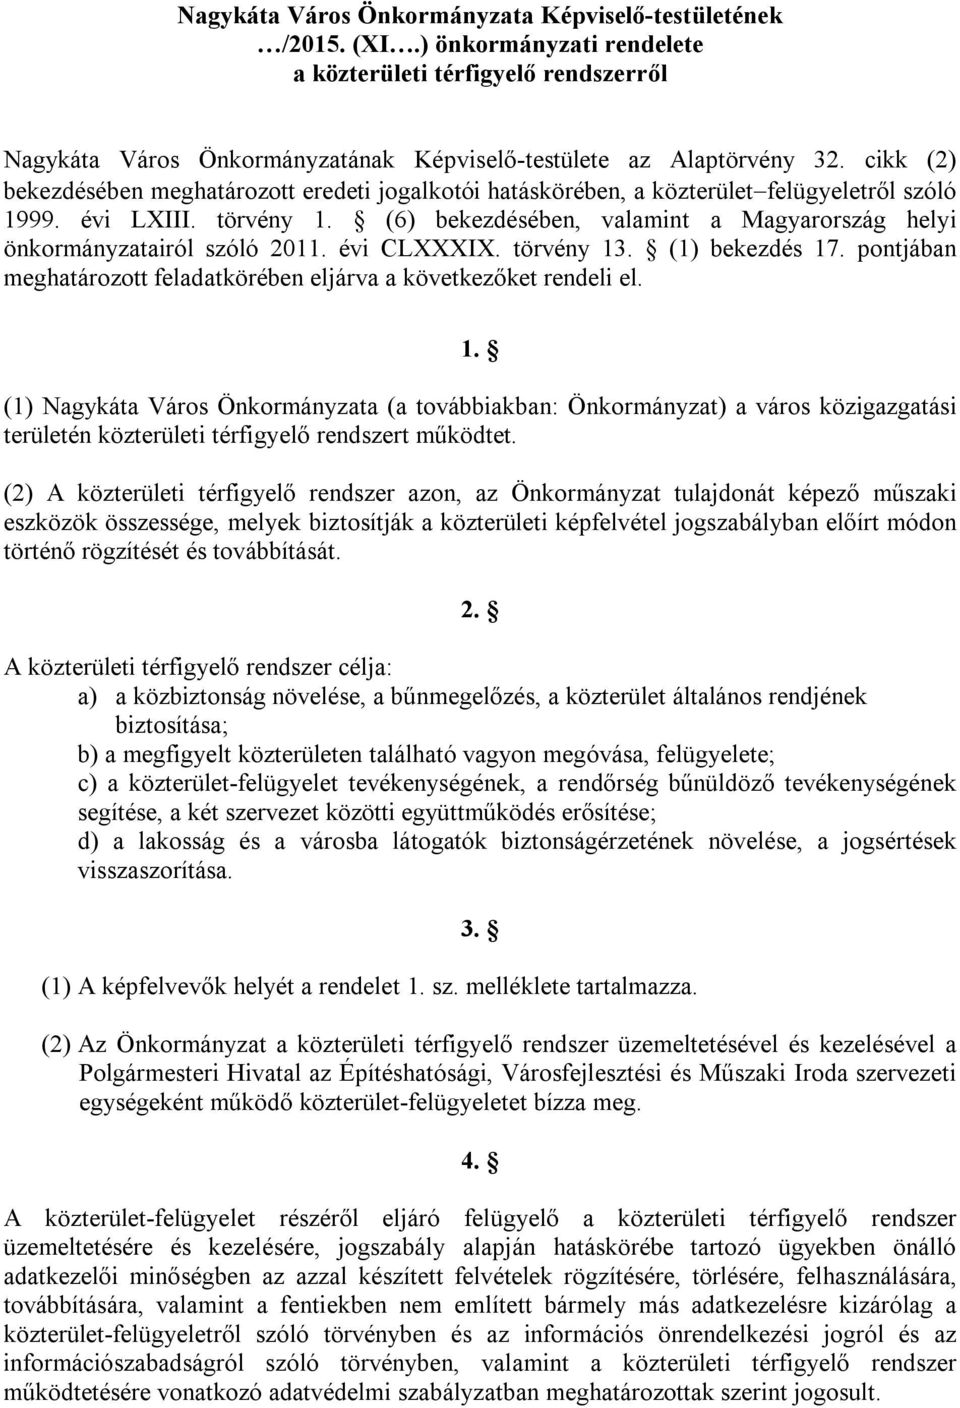 (6) bekezdésében, valamint a Magyarország helyi önkormányzatairól szóló 2011. évi CLXXXIX. törvény 13